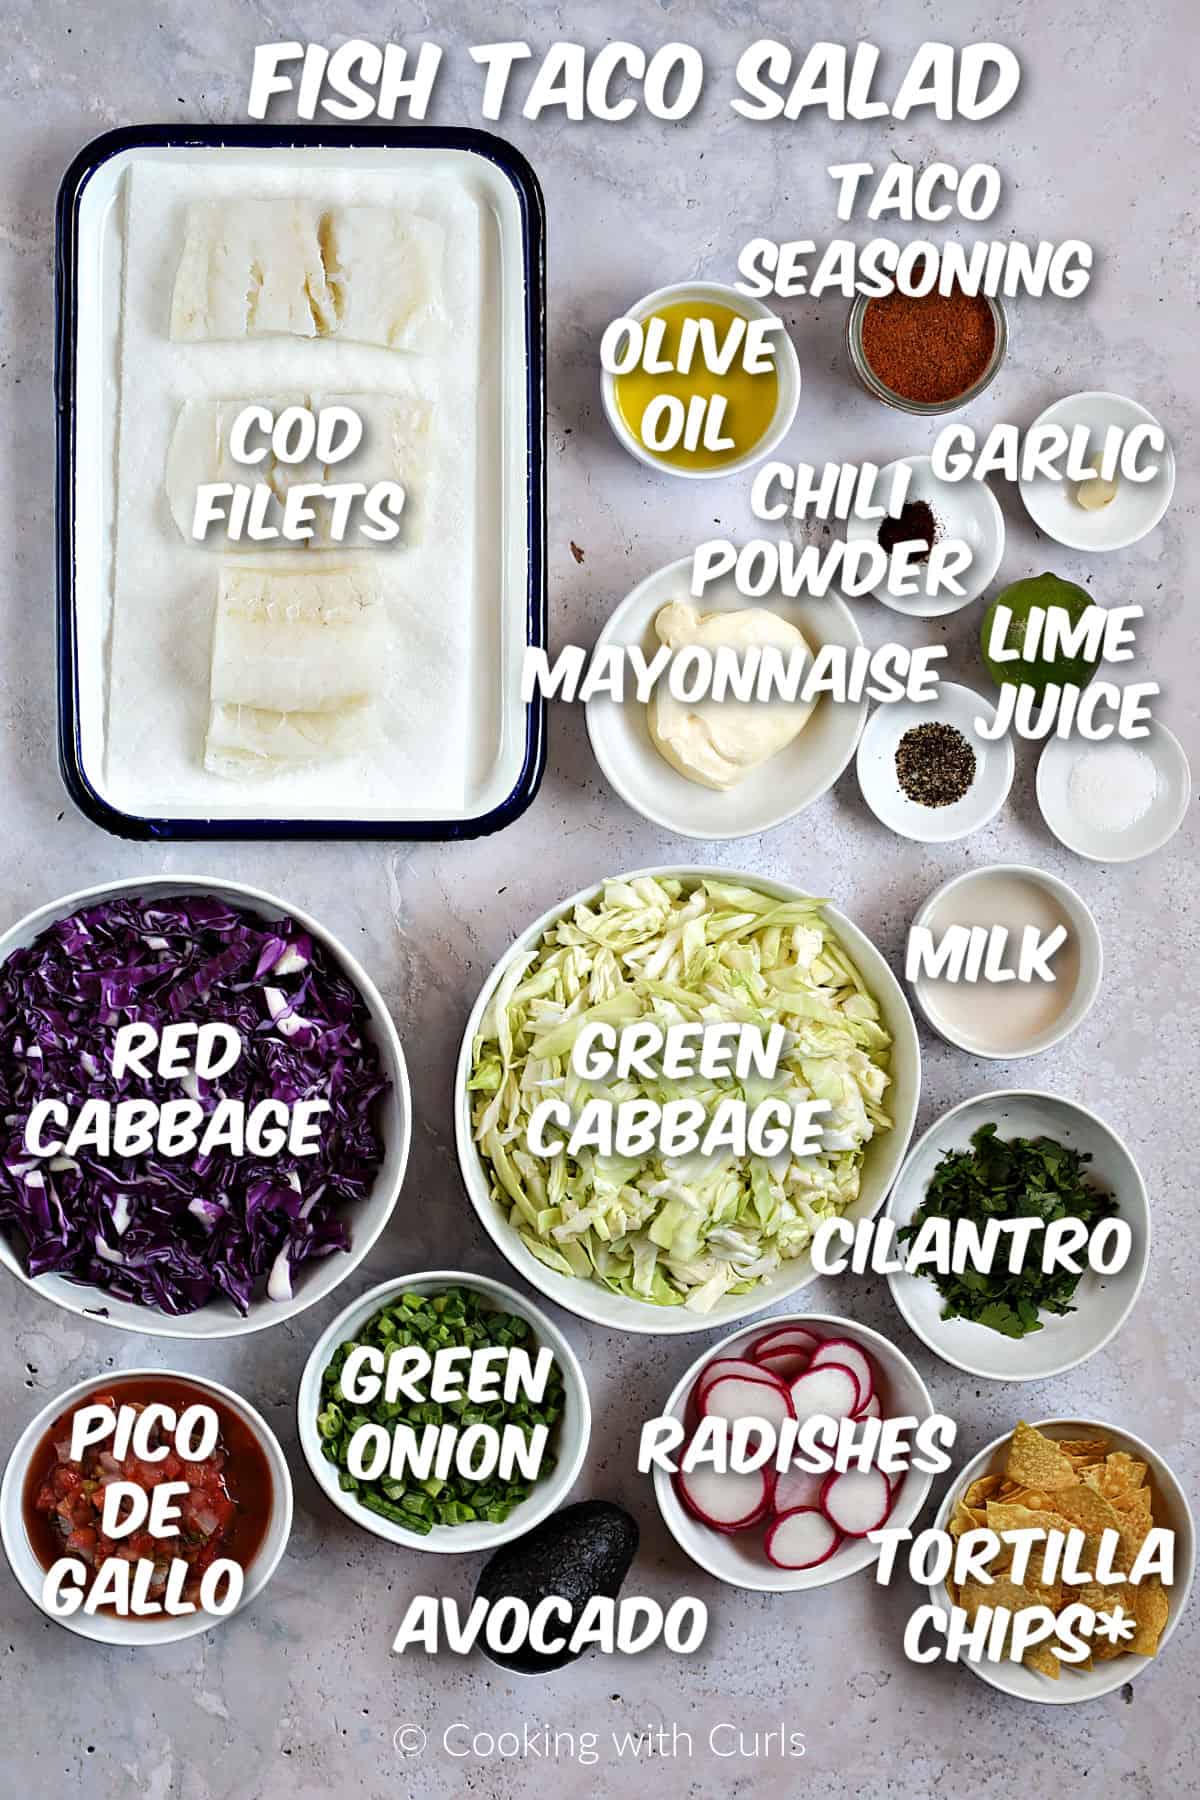 Ingredients to make fish taco salad. 